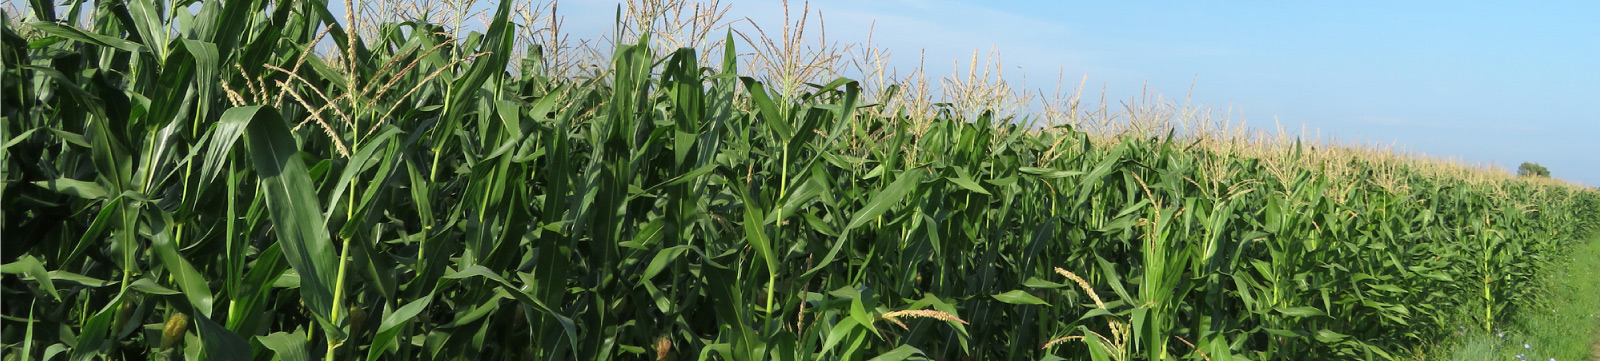 Michigan corn field